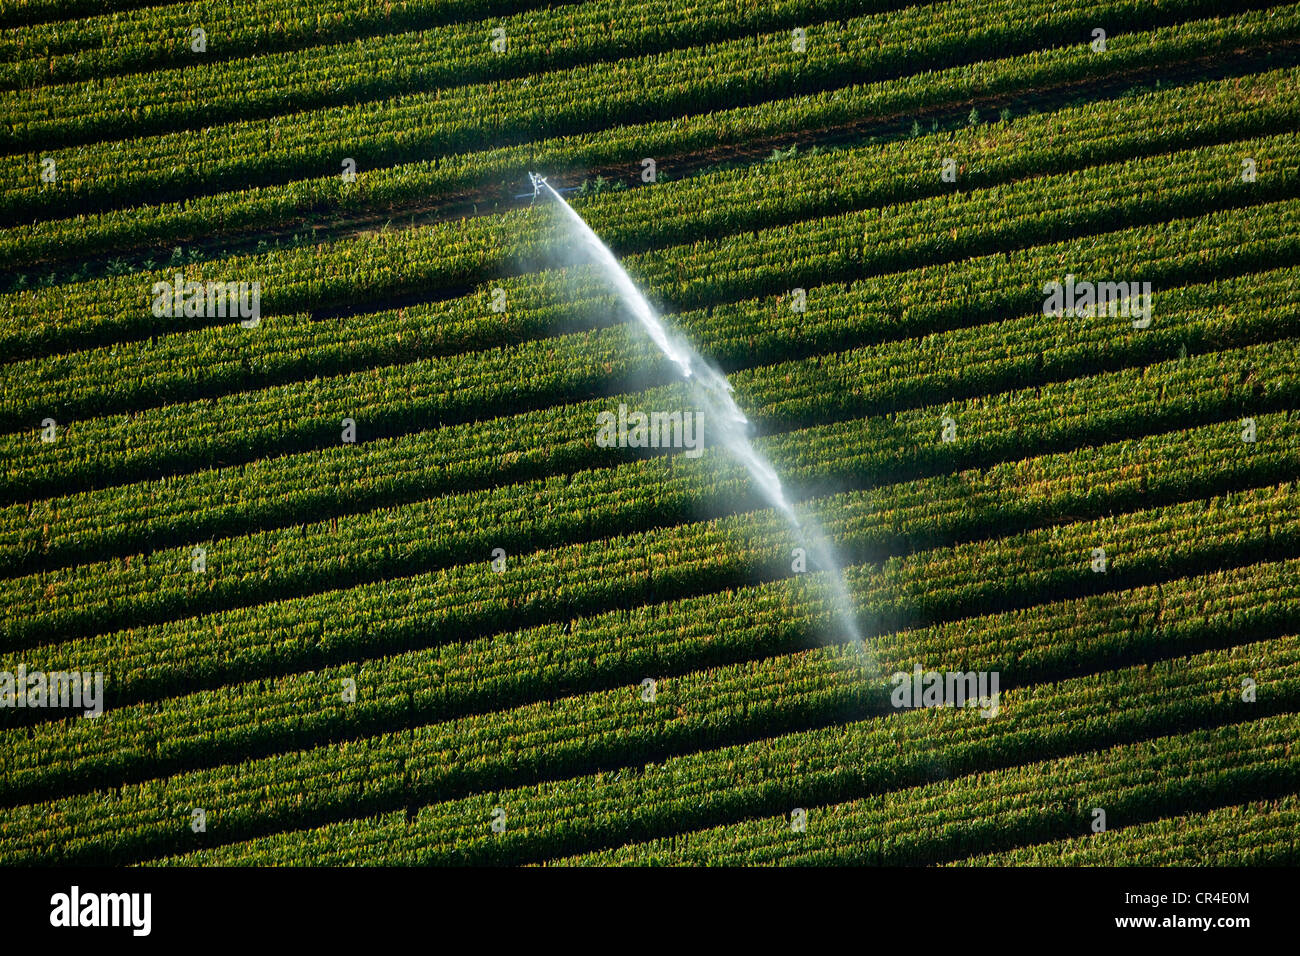 La France, Var, Rian, répandant dans un champ de maïs (vue aérienne) Banque D'Images